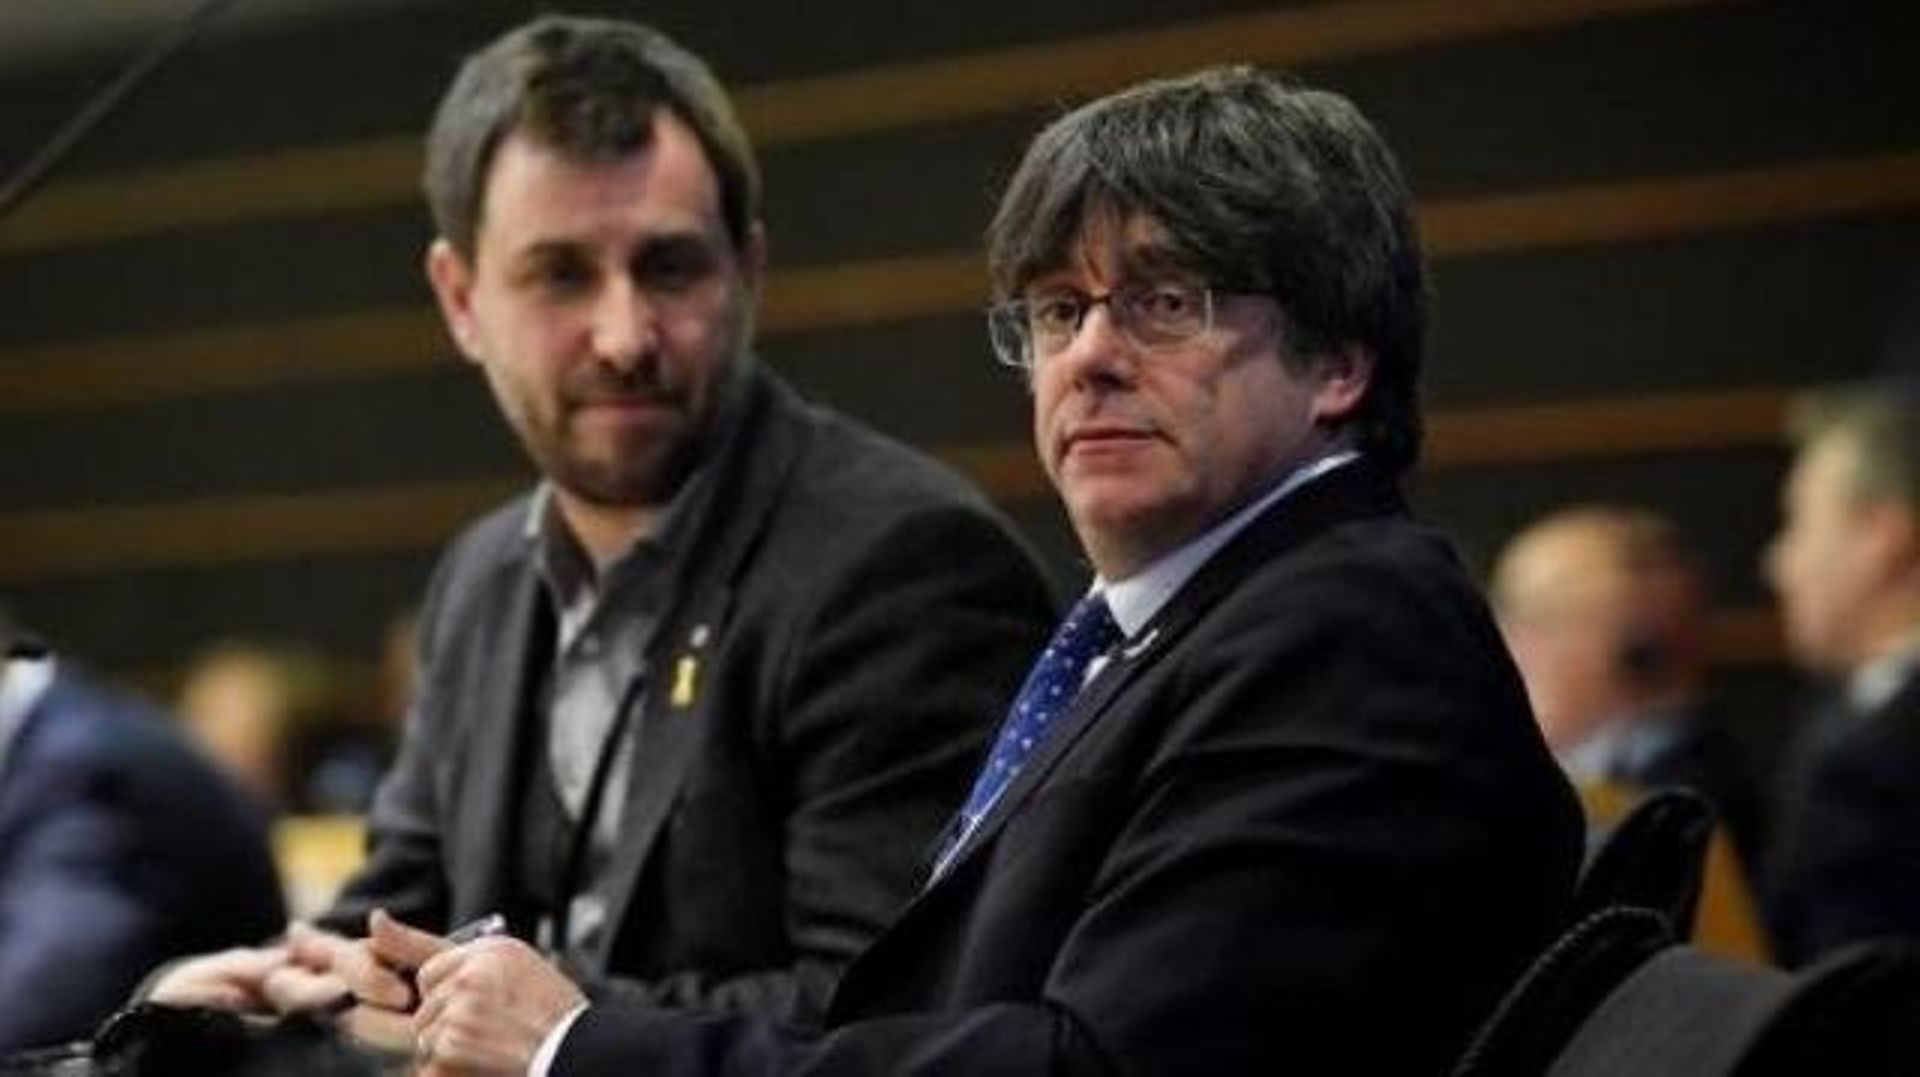 Puigdemont et Comín renoncent à leur demande de rejoindre le groupe européen "Verts/ALE"